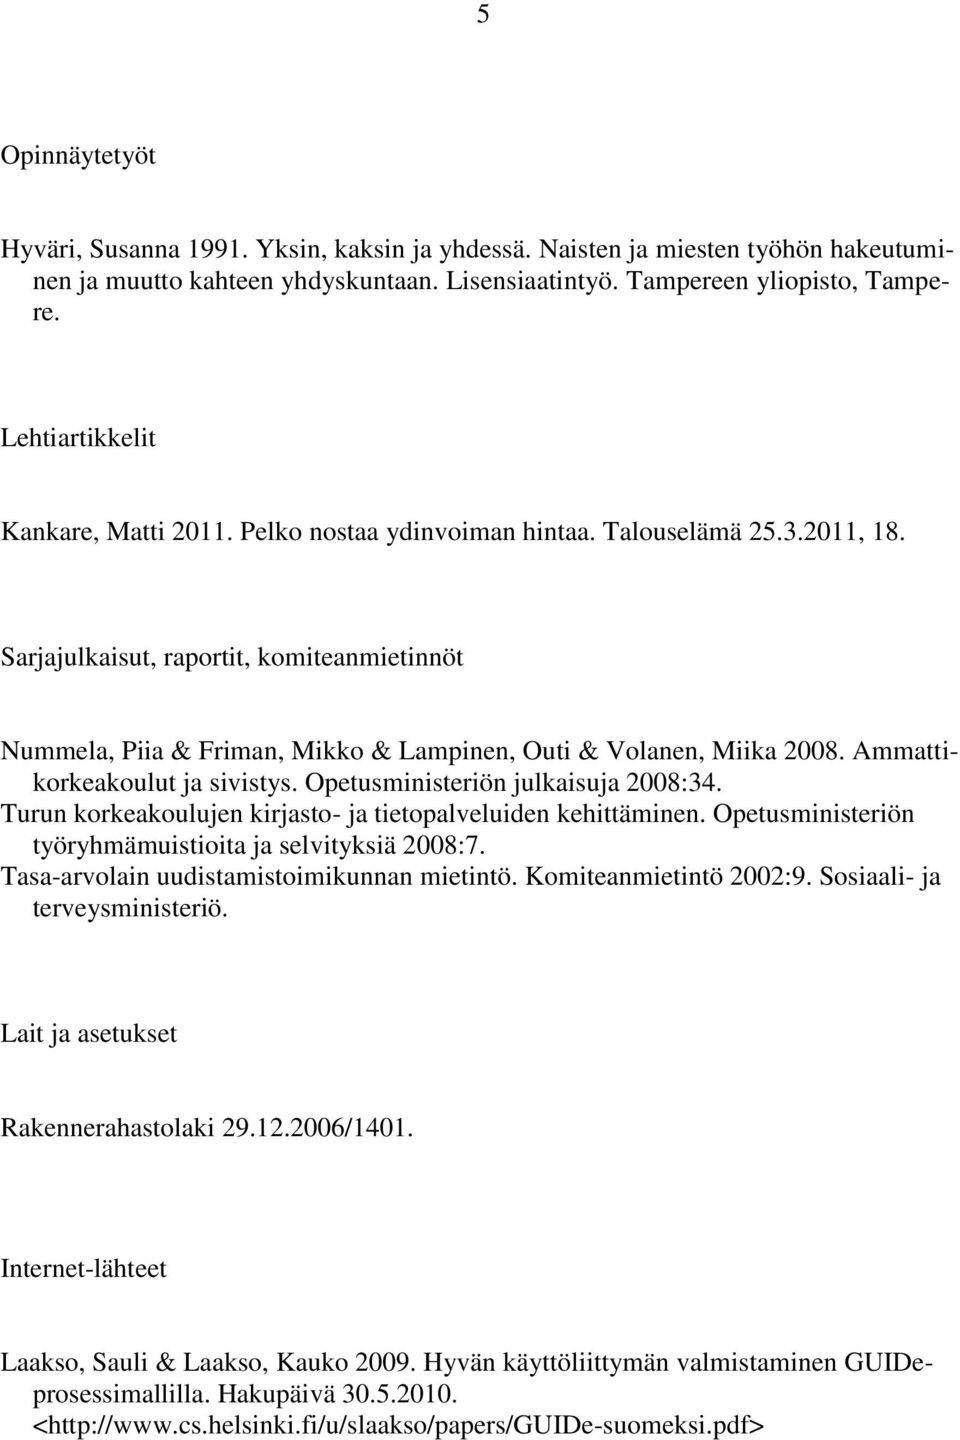 Sarjajulkaisut, raportit, komiteanmietinnöt Nummela, Piia & Friman, Mikko & Lampinen, Outi & Volanen, Miika 2008. Ammattikorkeakoulut ja sivistys. Opetusministeriön julkaisuja 2008:34.